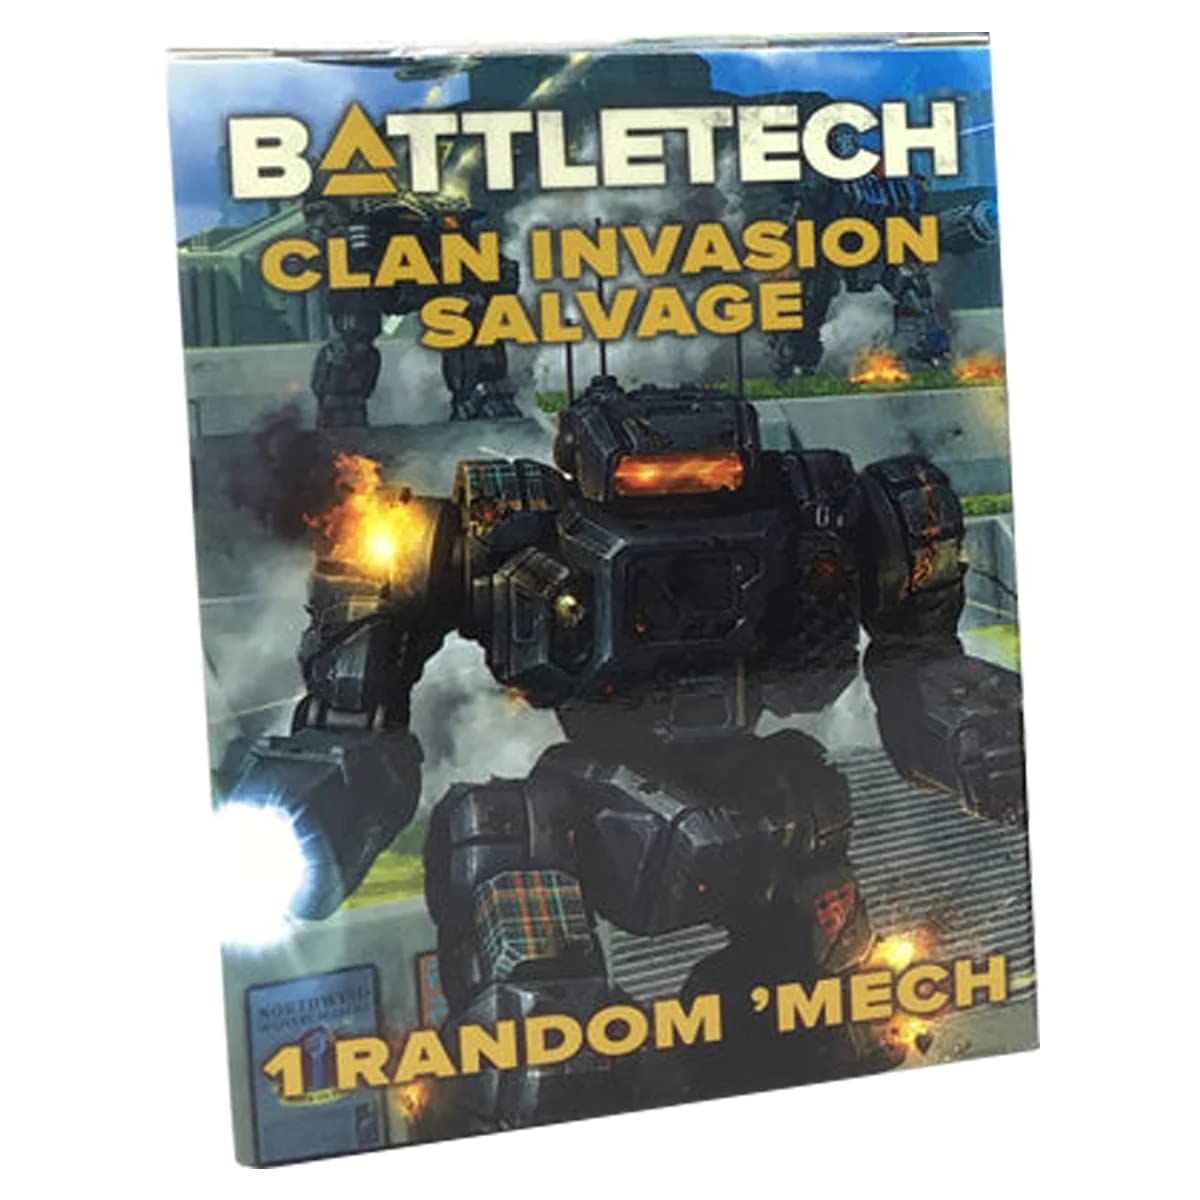 Battletech Clan Invasion Salvage Box